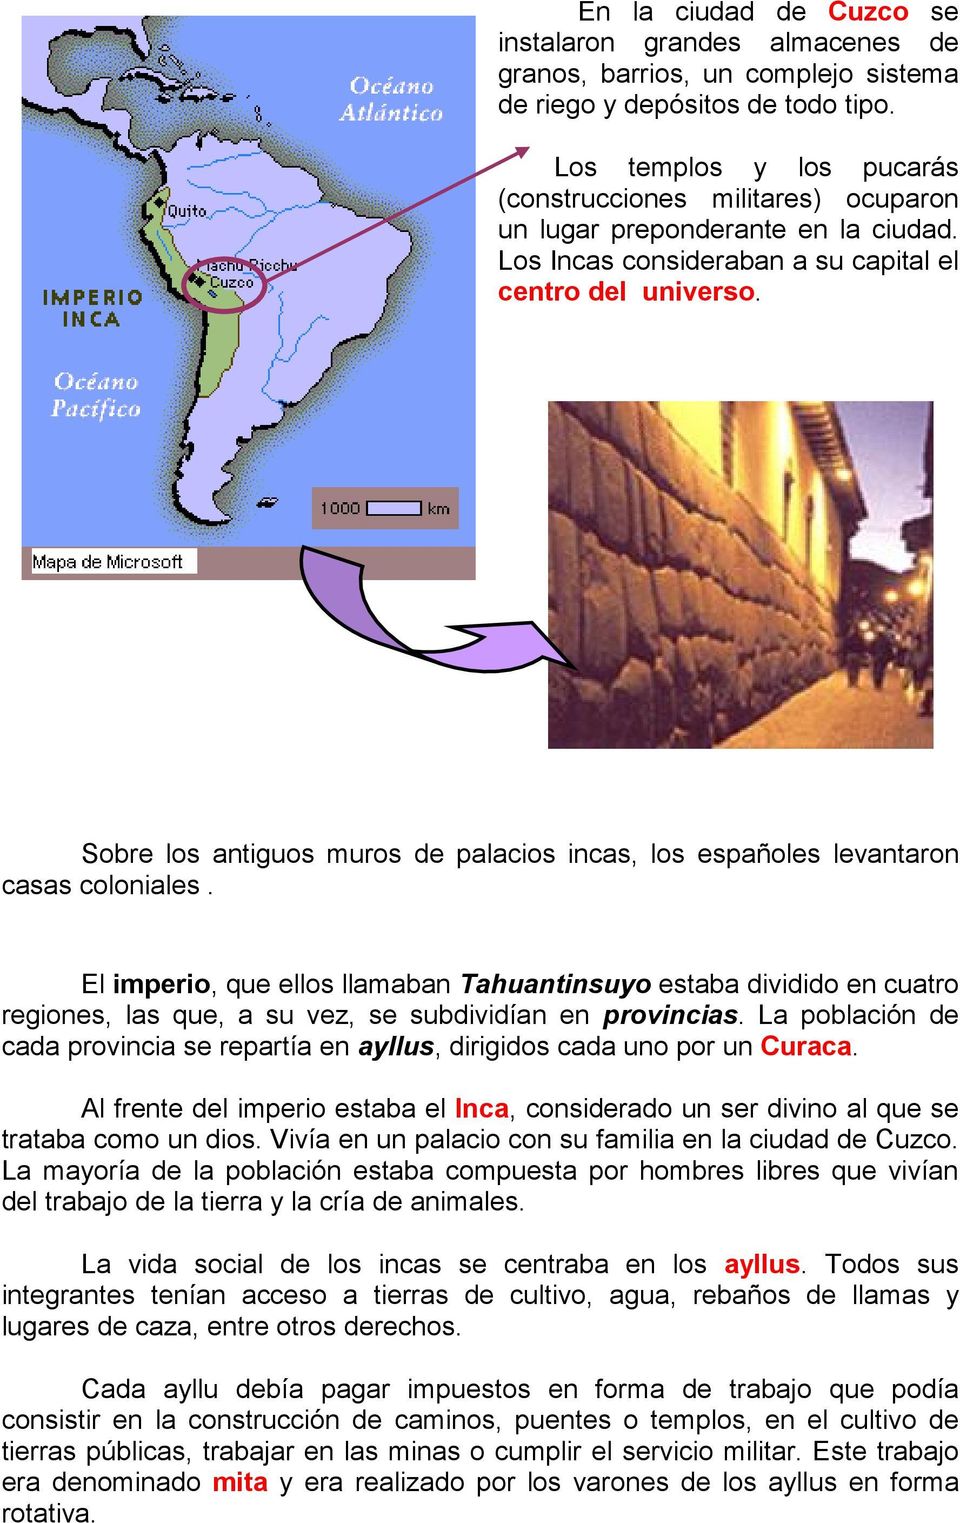 Sobre los antiguos muros de palacios incas, los españoles levantaron casas coloniales.